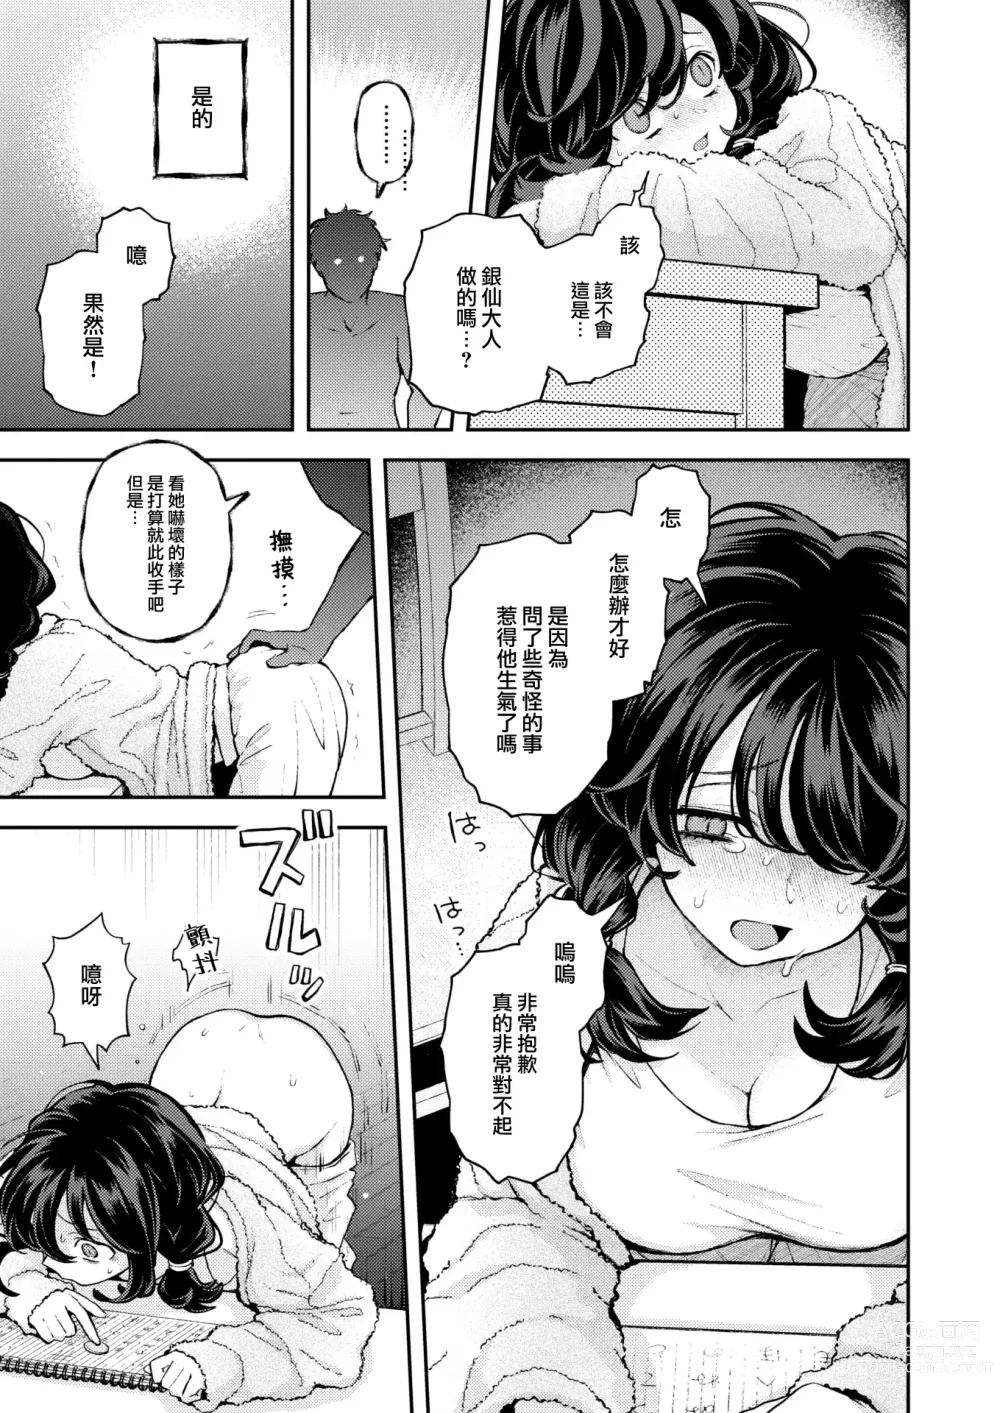 Page 10 of manga Hitori de Shinaide